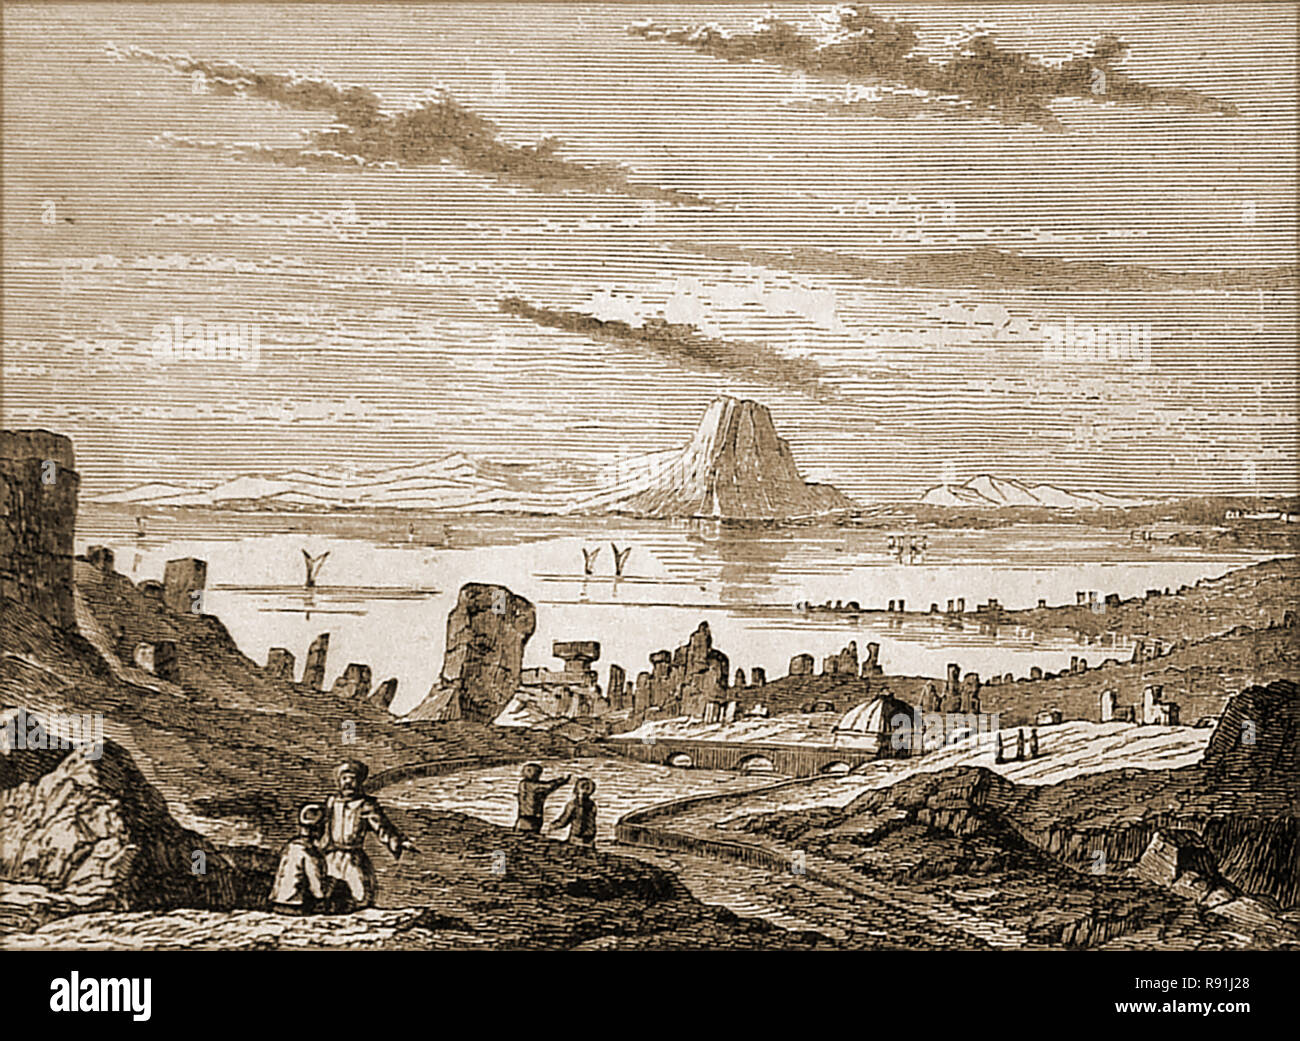 Une image représentant les anciennes ruines de la ville de Carthage, montrant le golfe de Tunis et une interprétation artistique du Djebel Boukornine, Djebel Bou Kornine(Bou Kornine ou monter. Banque D'Images